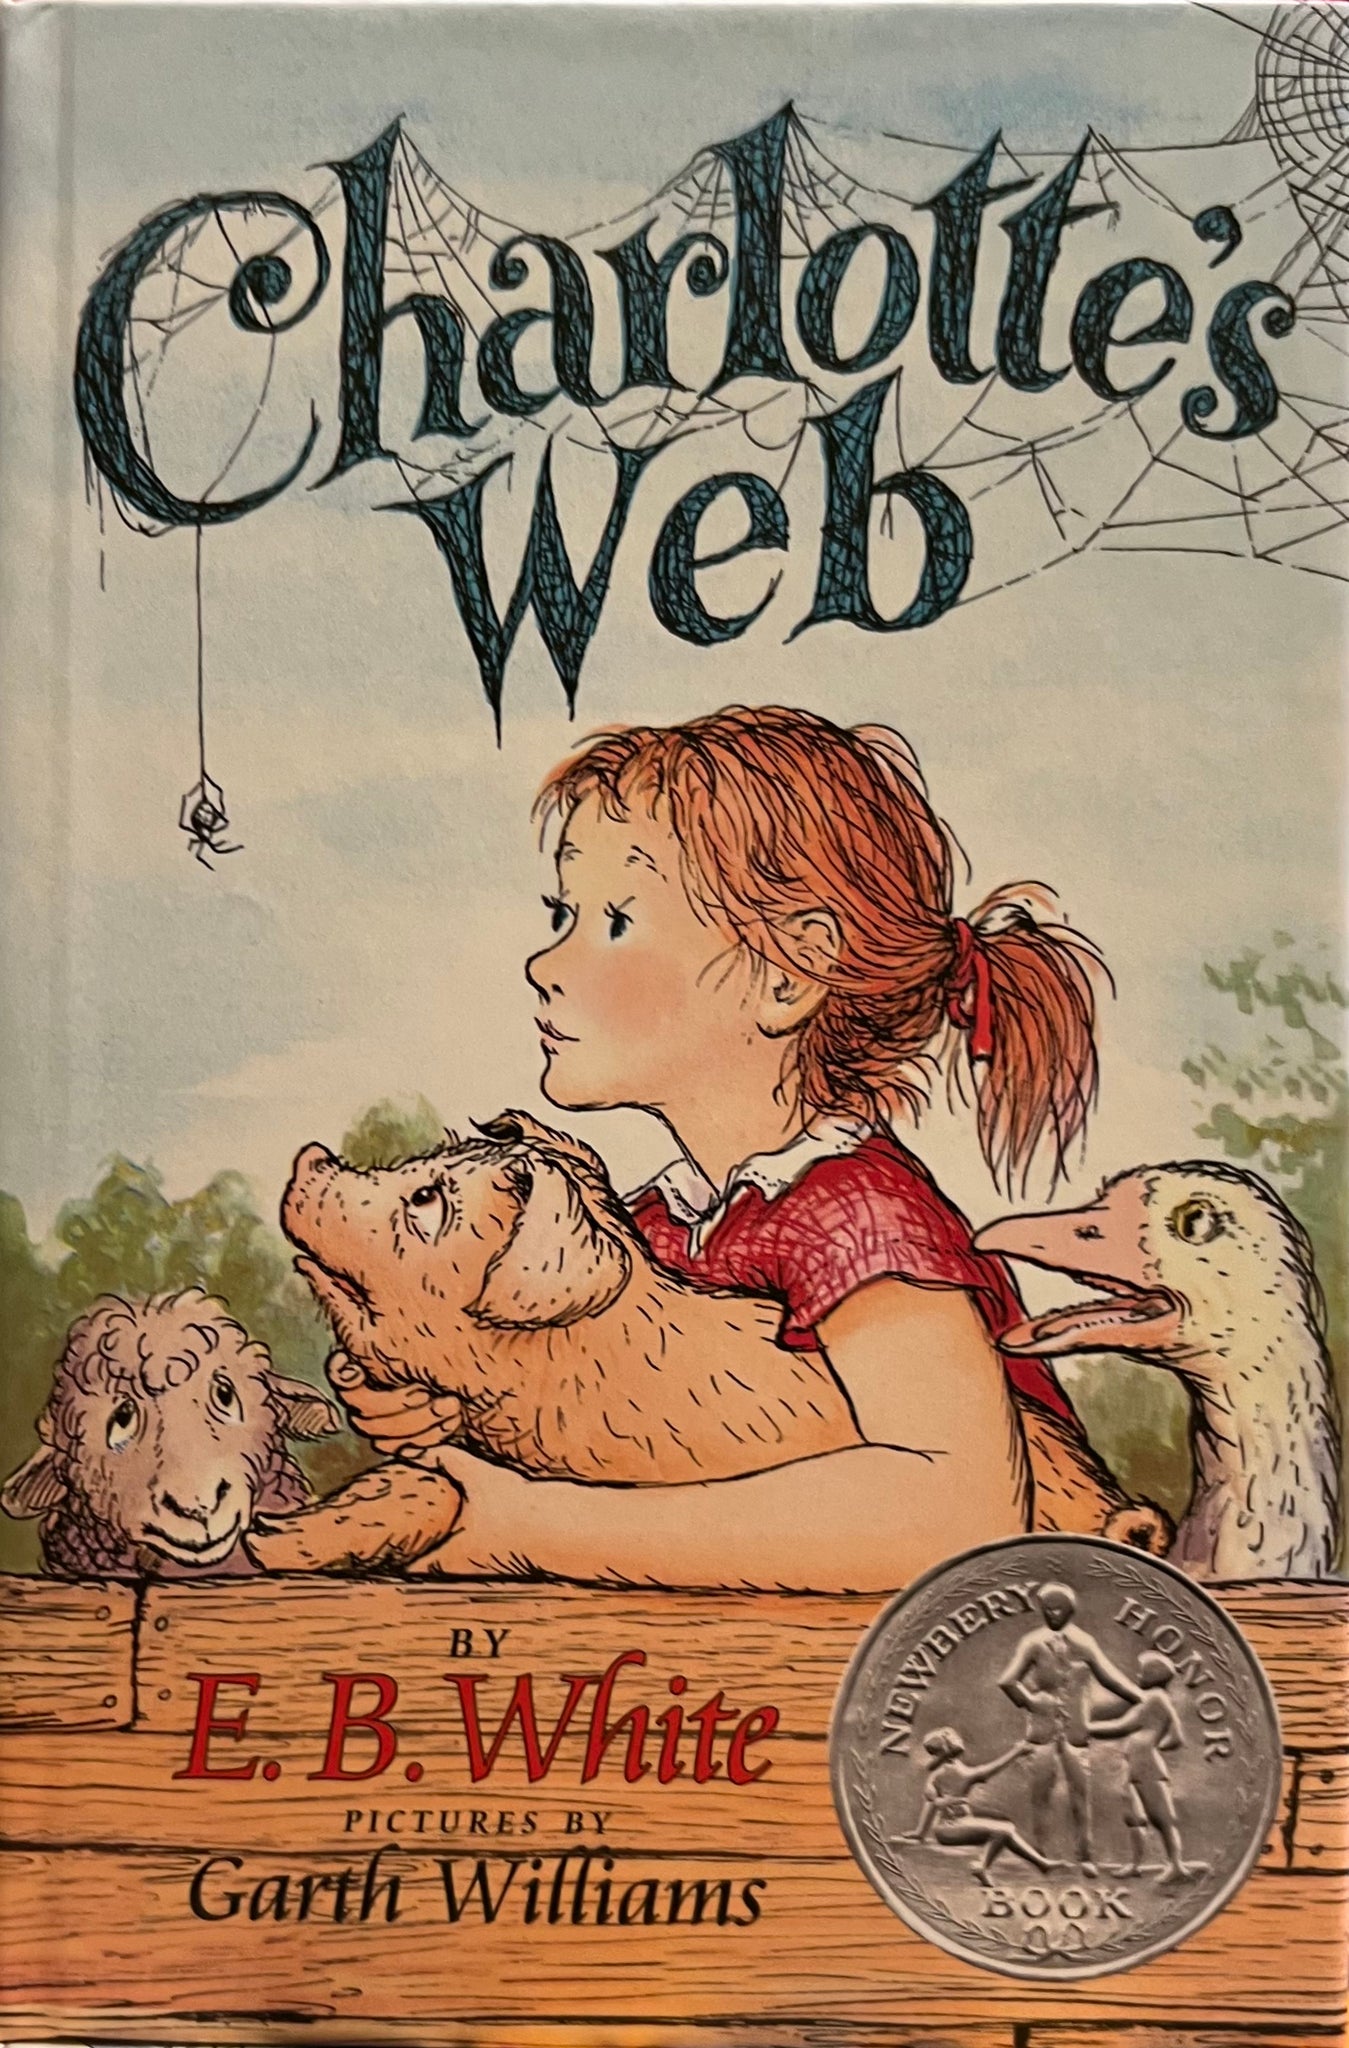 Charlotte’s Web, E. B. White